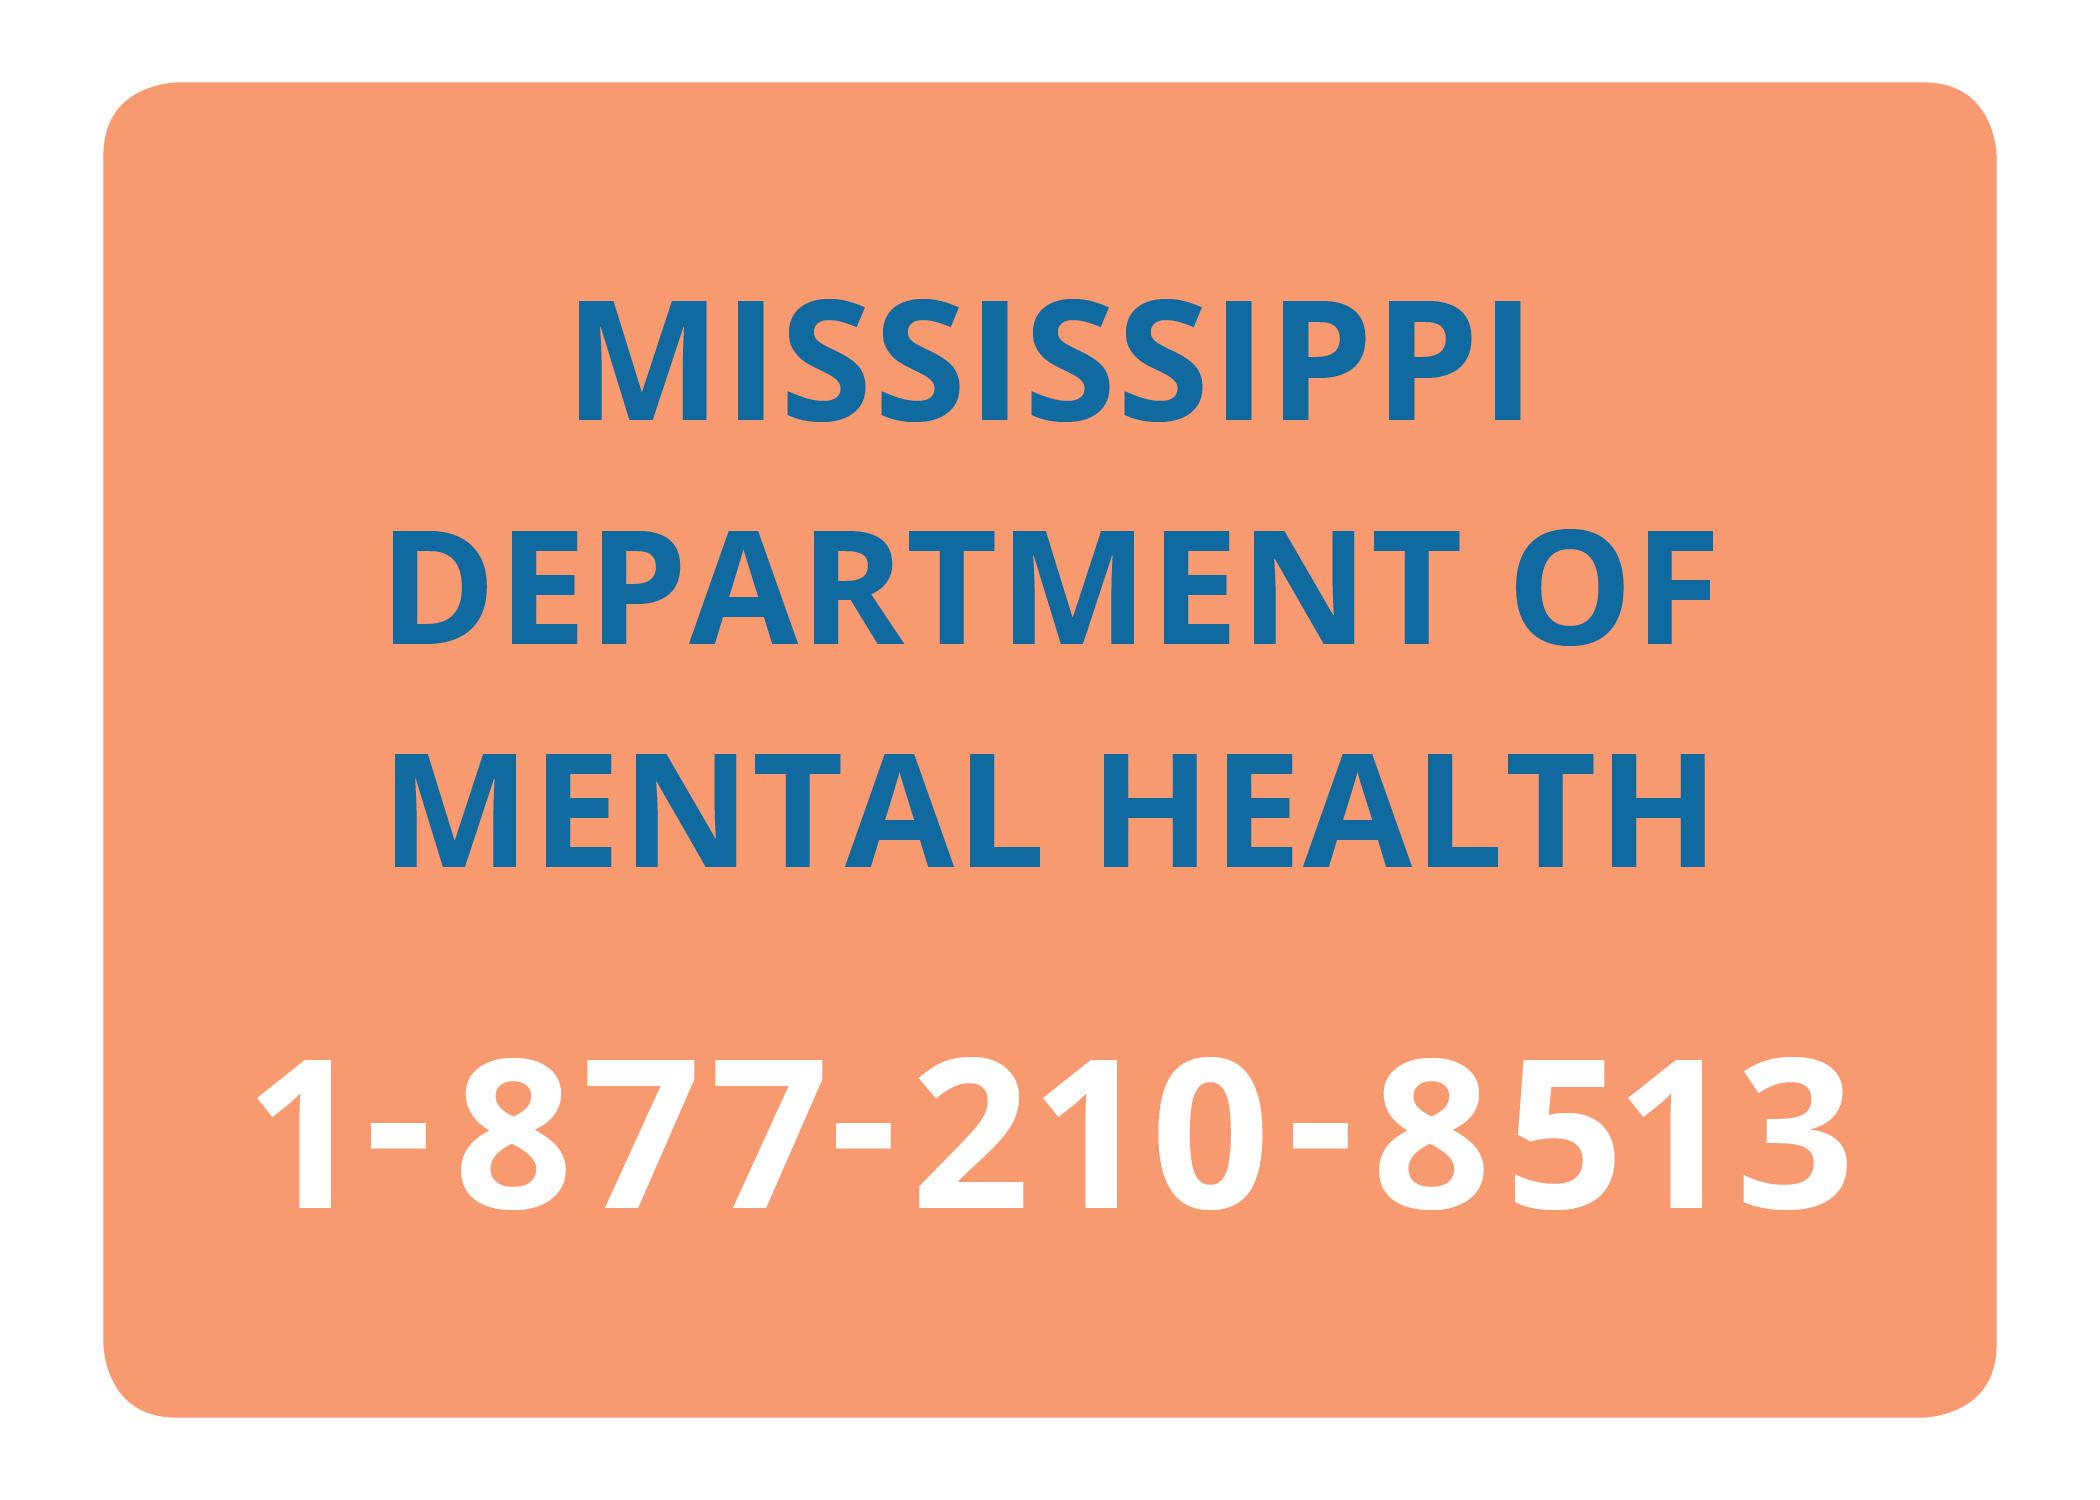 Mississippi Department of Mental Health Helpline, 1-877-210-8513